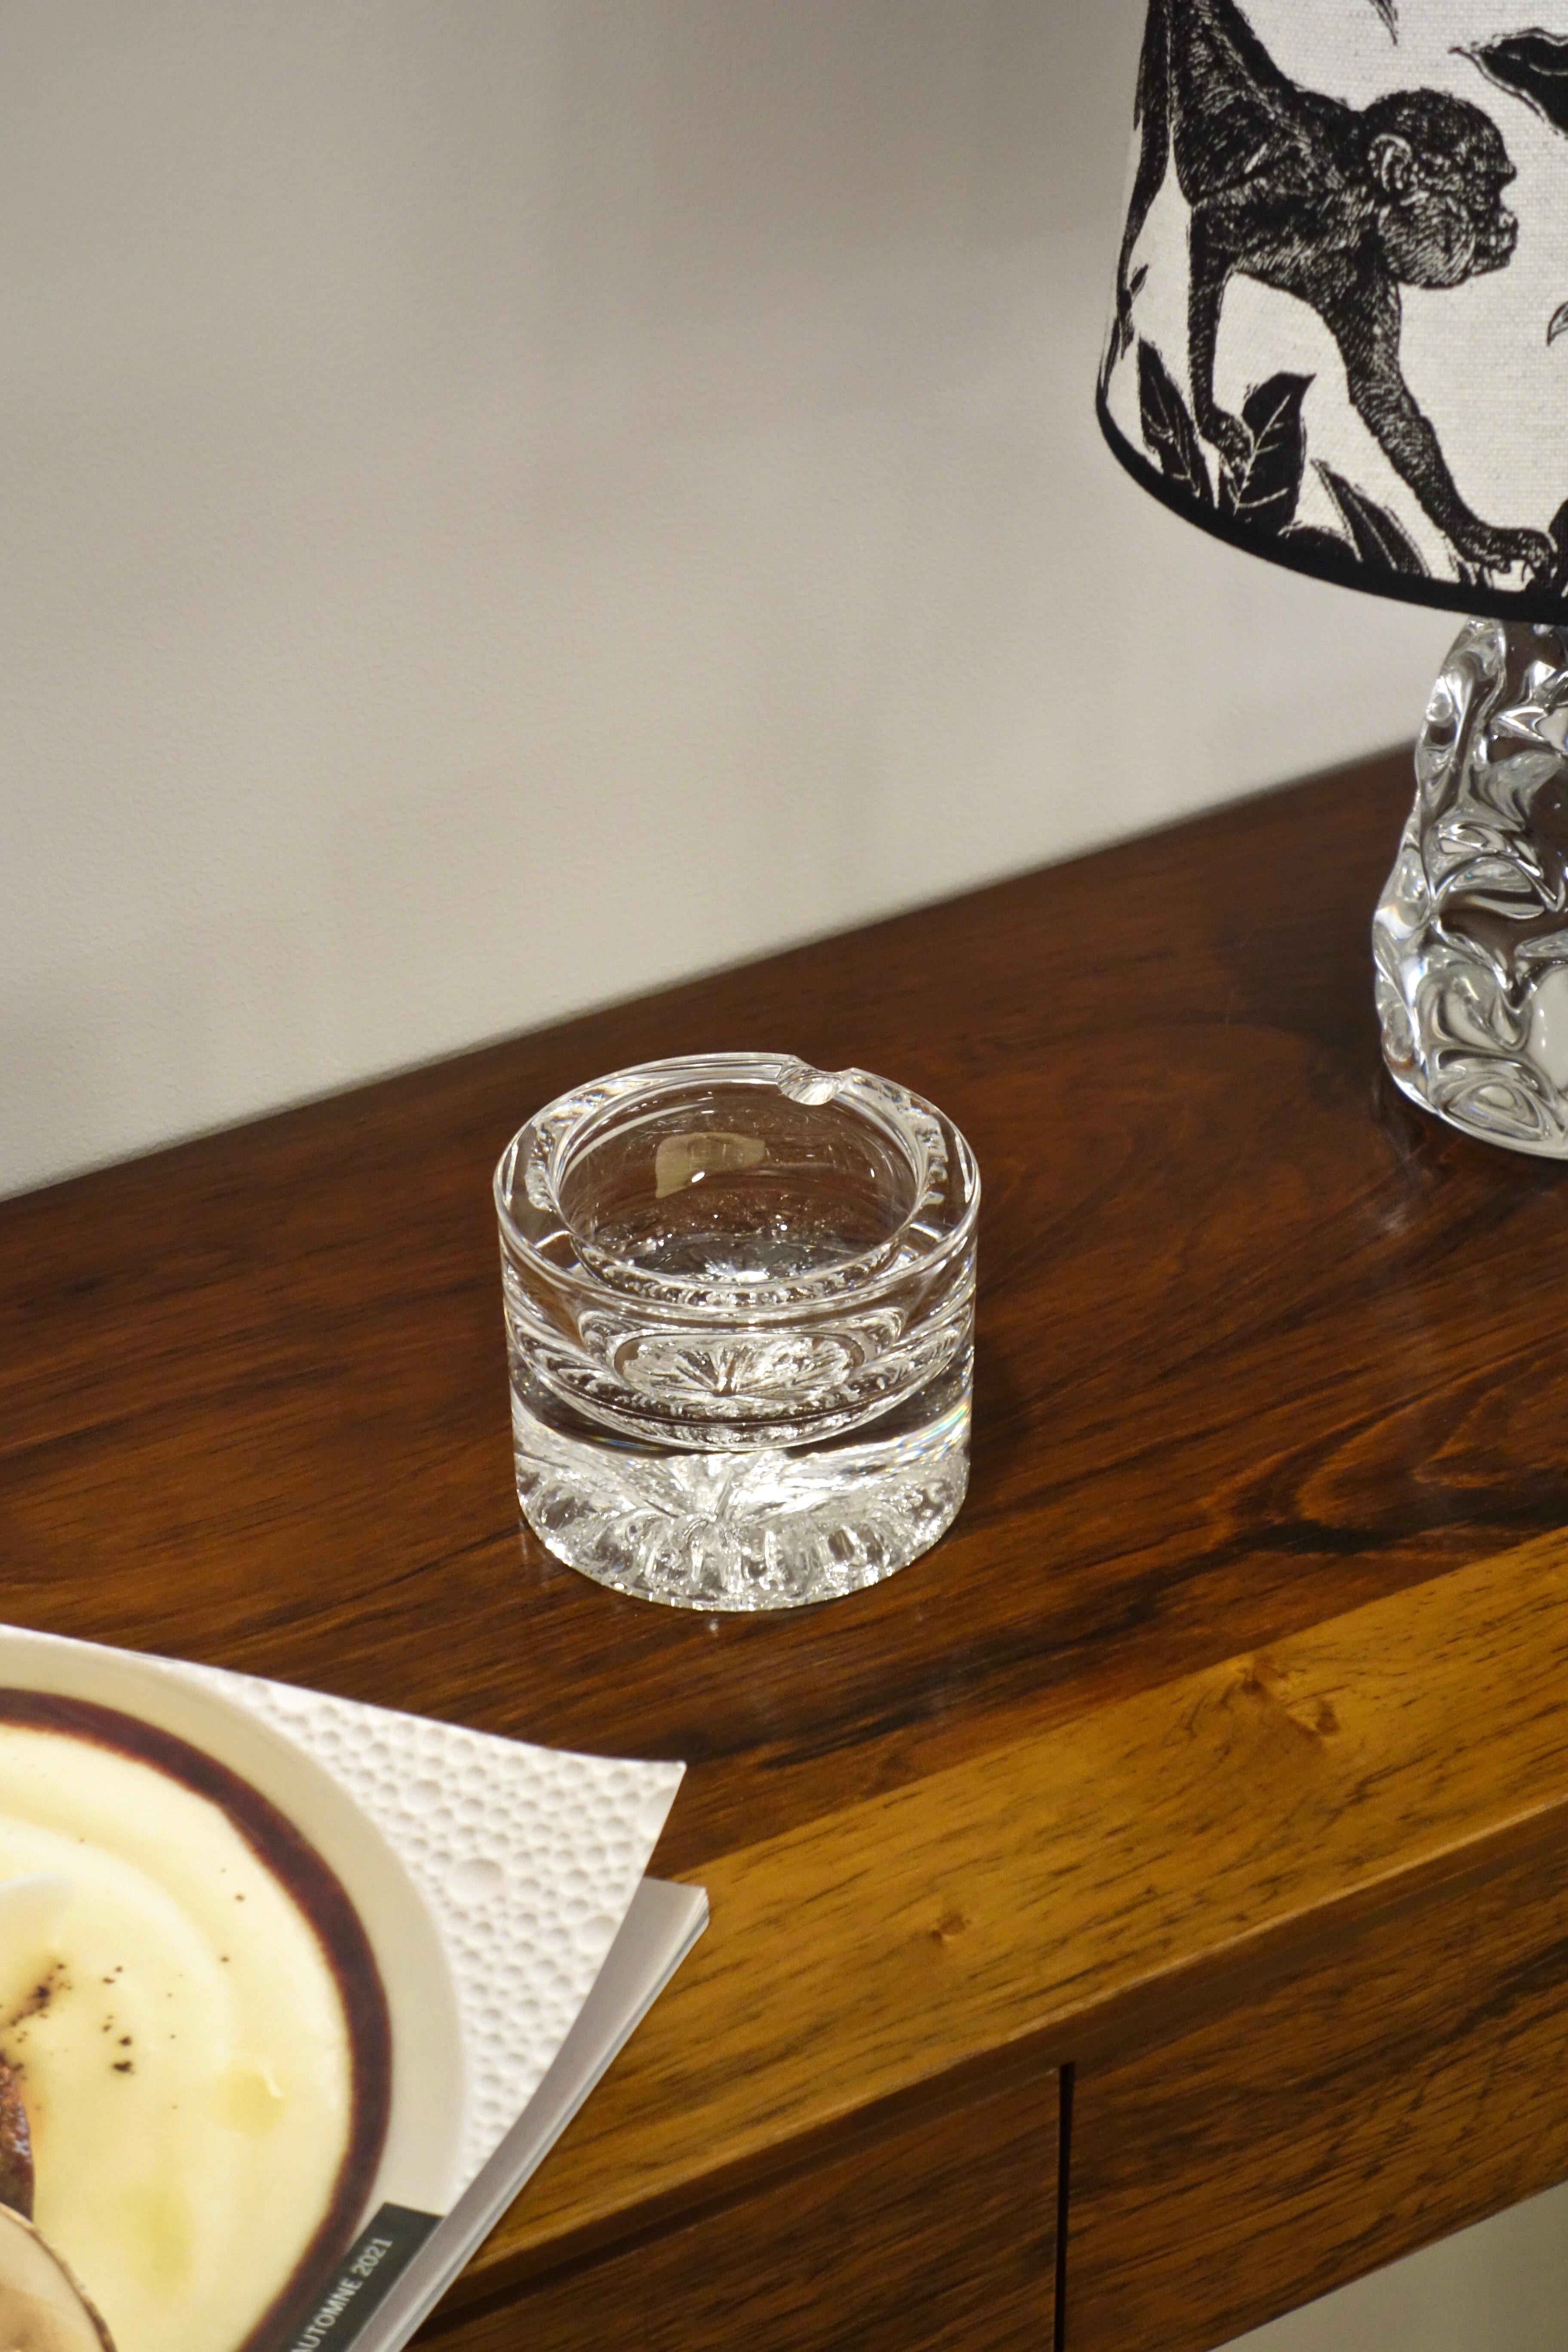 Aschenbecher aus Kristall, signiert von dem berühmten Haus Daum aus den 1960er Jahren. Sehr schöne Verarbeitung mit graviertem Dekor. Eine für diese Manufaktur typische Arbeit von großer Finesse. Signiertes Modell in perfektem Zustand. Dieses